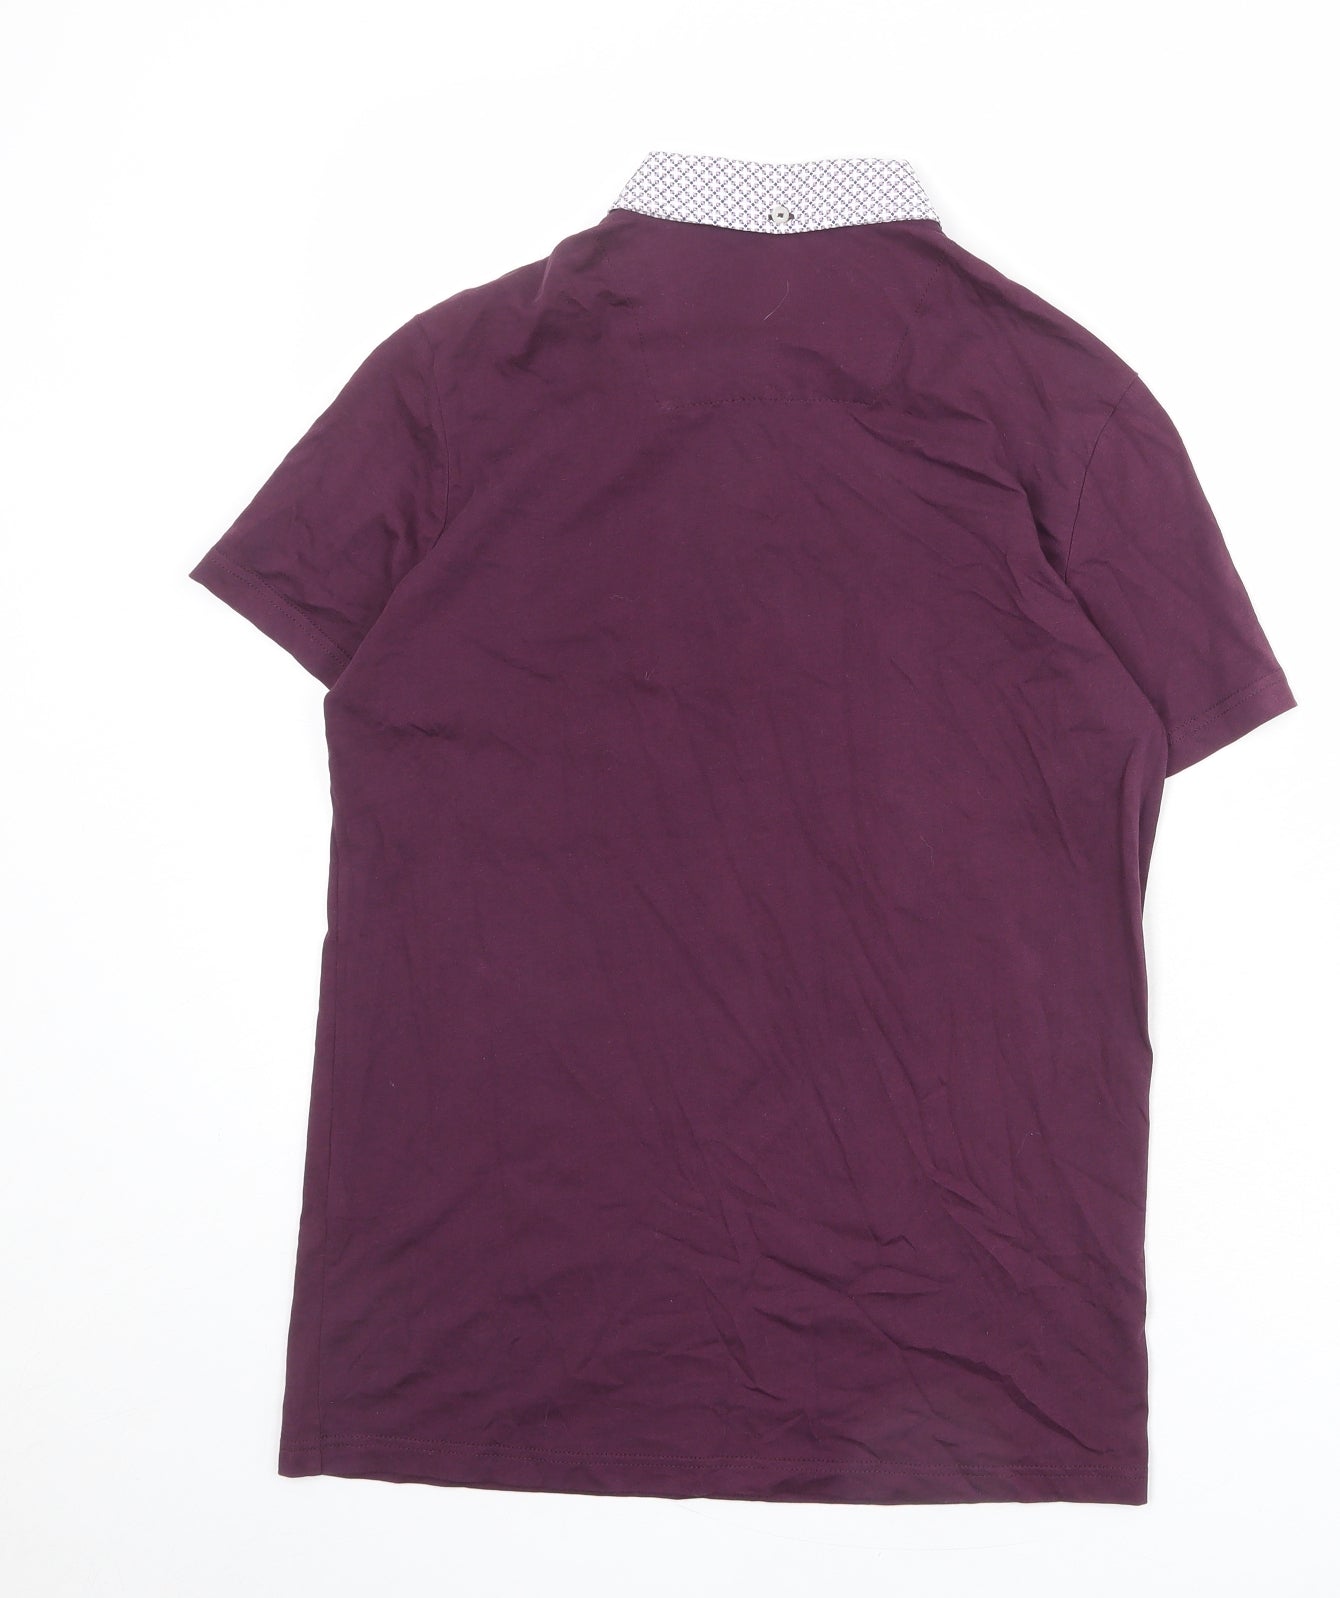 Guide London Mens Purple 100% Cotton Polo Size S Collared Button